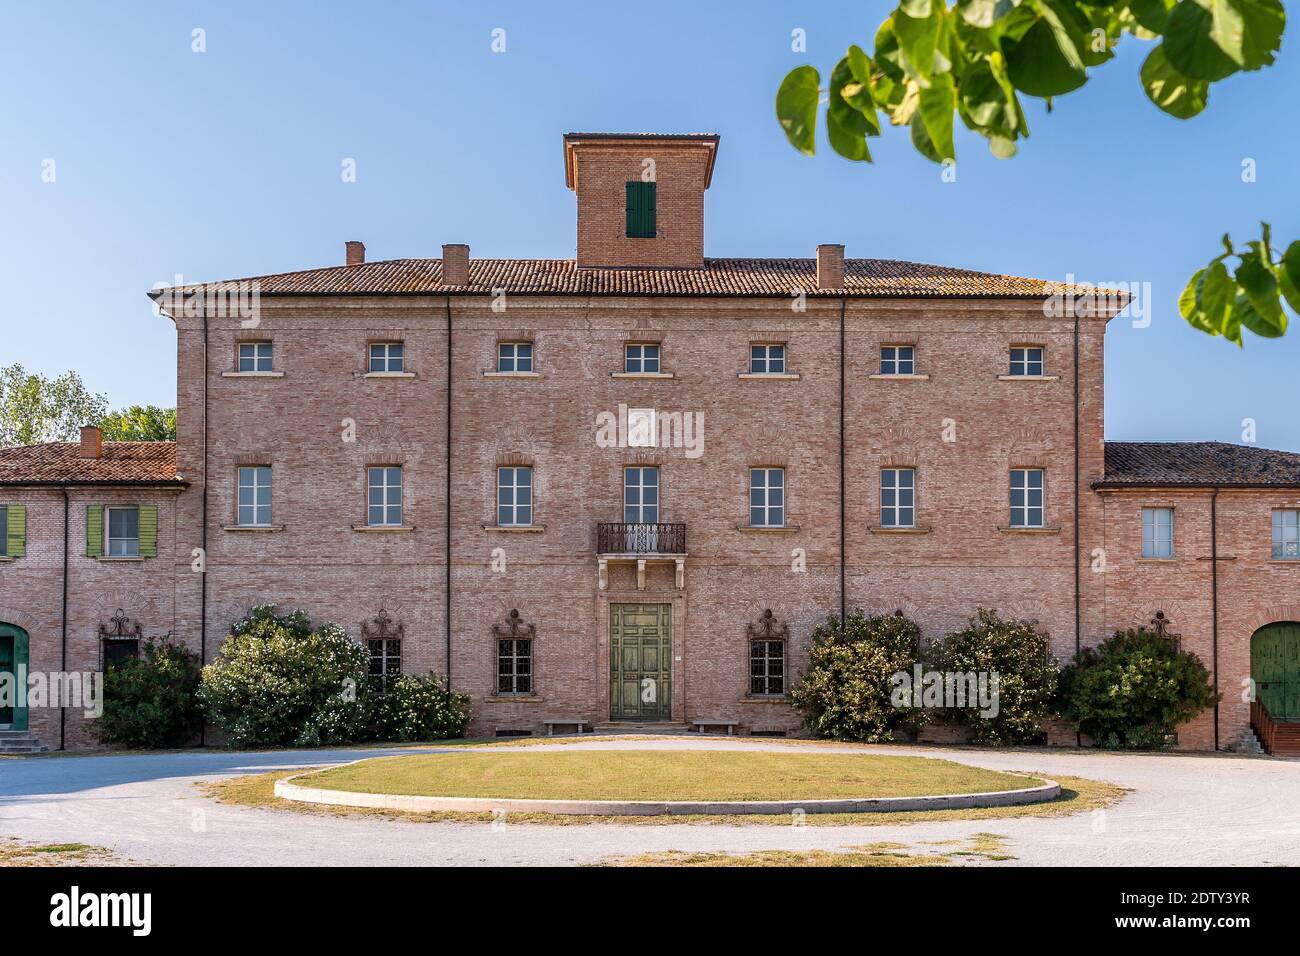 San Mauro, Forli Cesena, Emilia Romagna, Italia, Agosto 2020: Edificio Villa Torlonia, dentro del Parque público Poesia Pascoli. Foto de stock